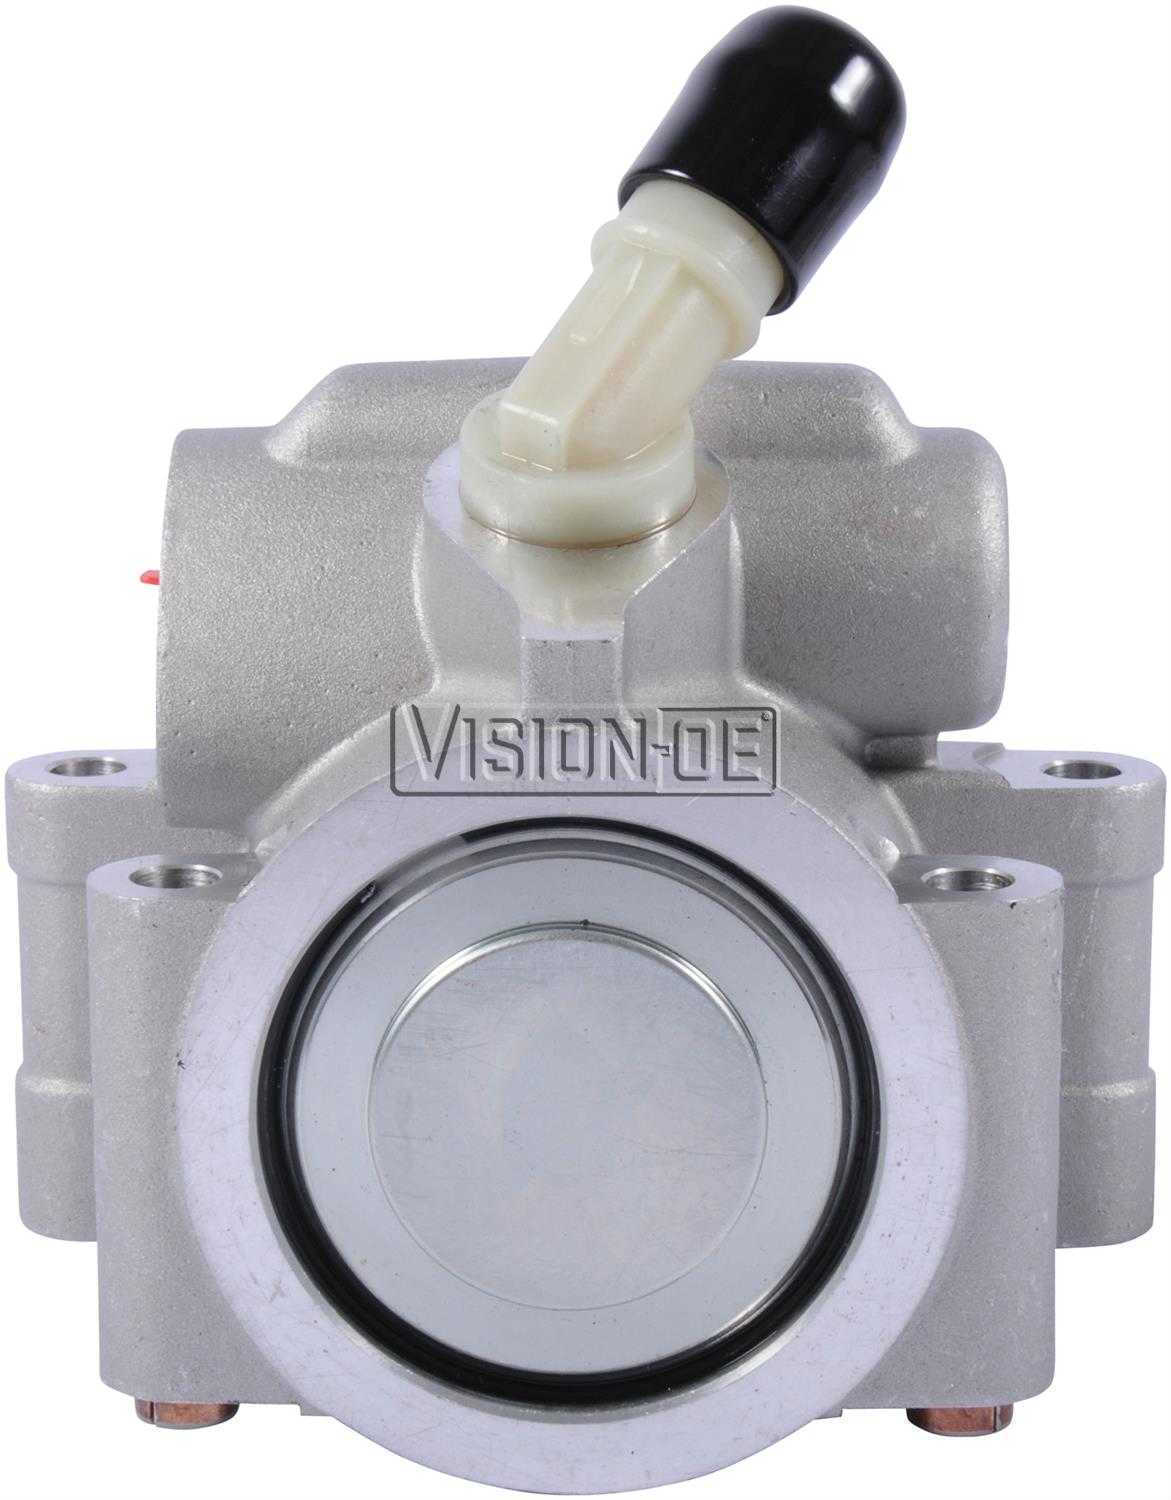 VISION-OE - New Power Steering Pump - VOE N712-0193